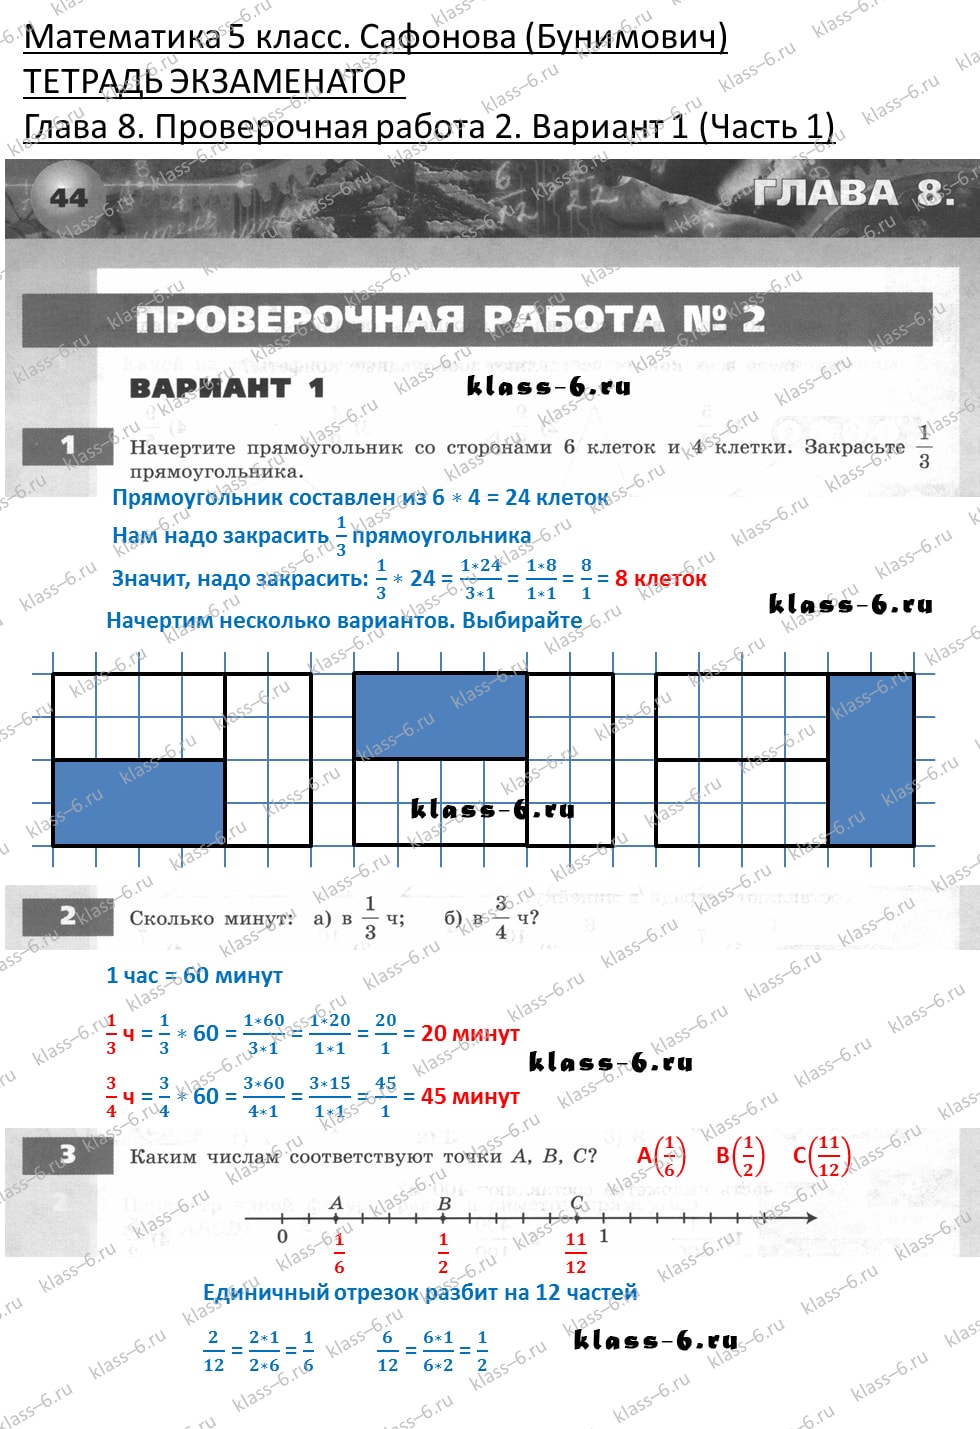 решебник и гдз по математике тетрадь экзаменатор Сафонова, Бунимович 5 класс глава 8 контрольная работа 2 вариант 1 (1)